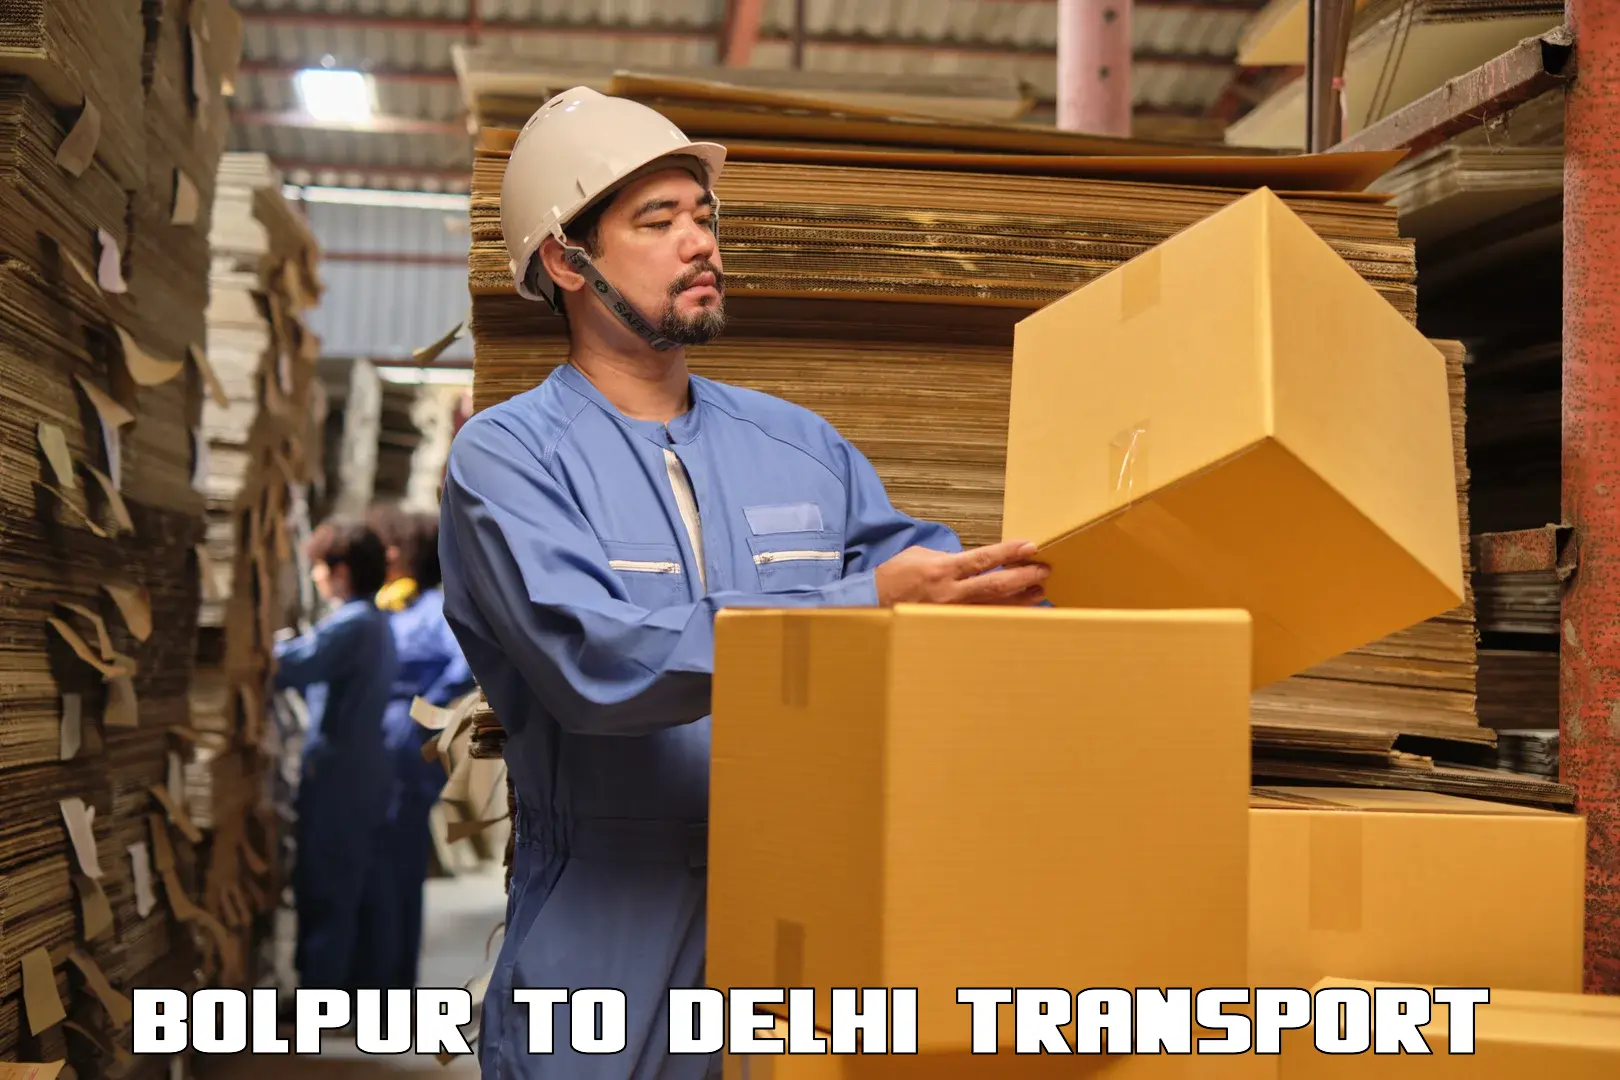 Road transport services Bolpur to NIT Delhi